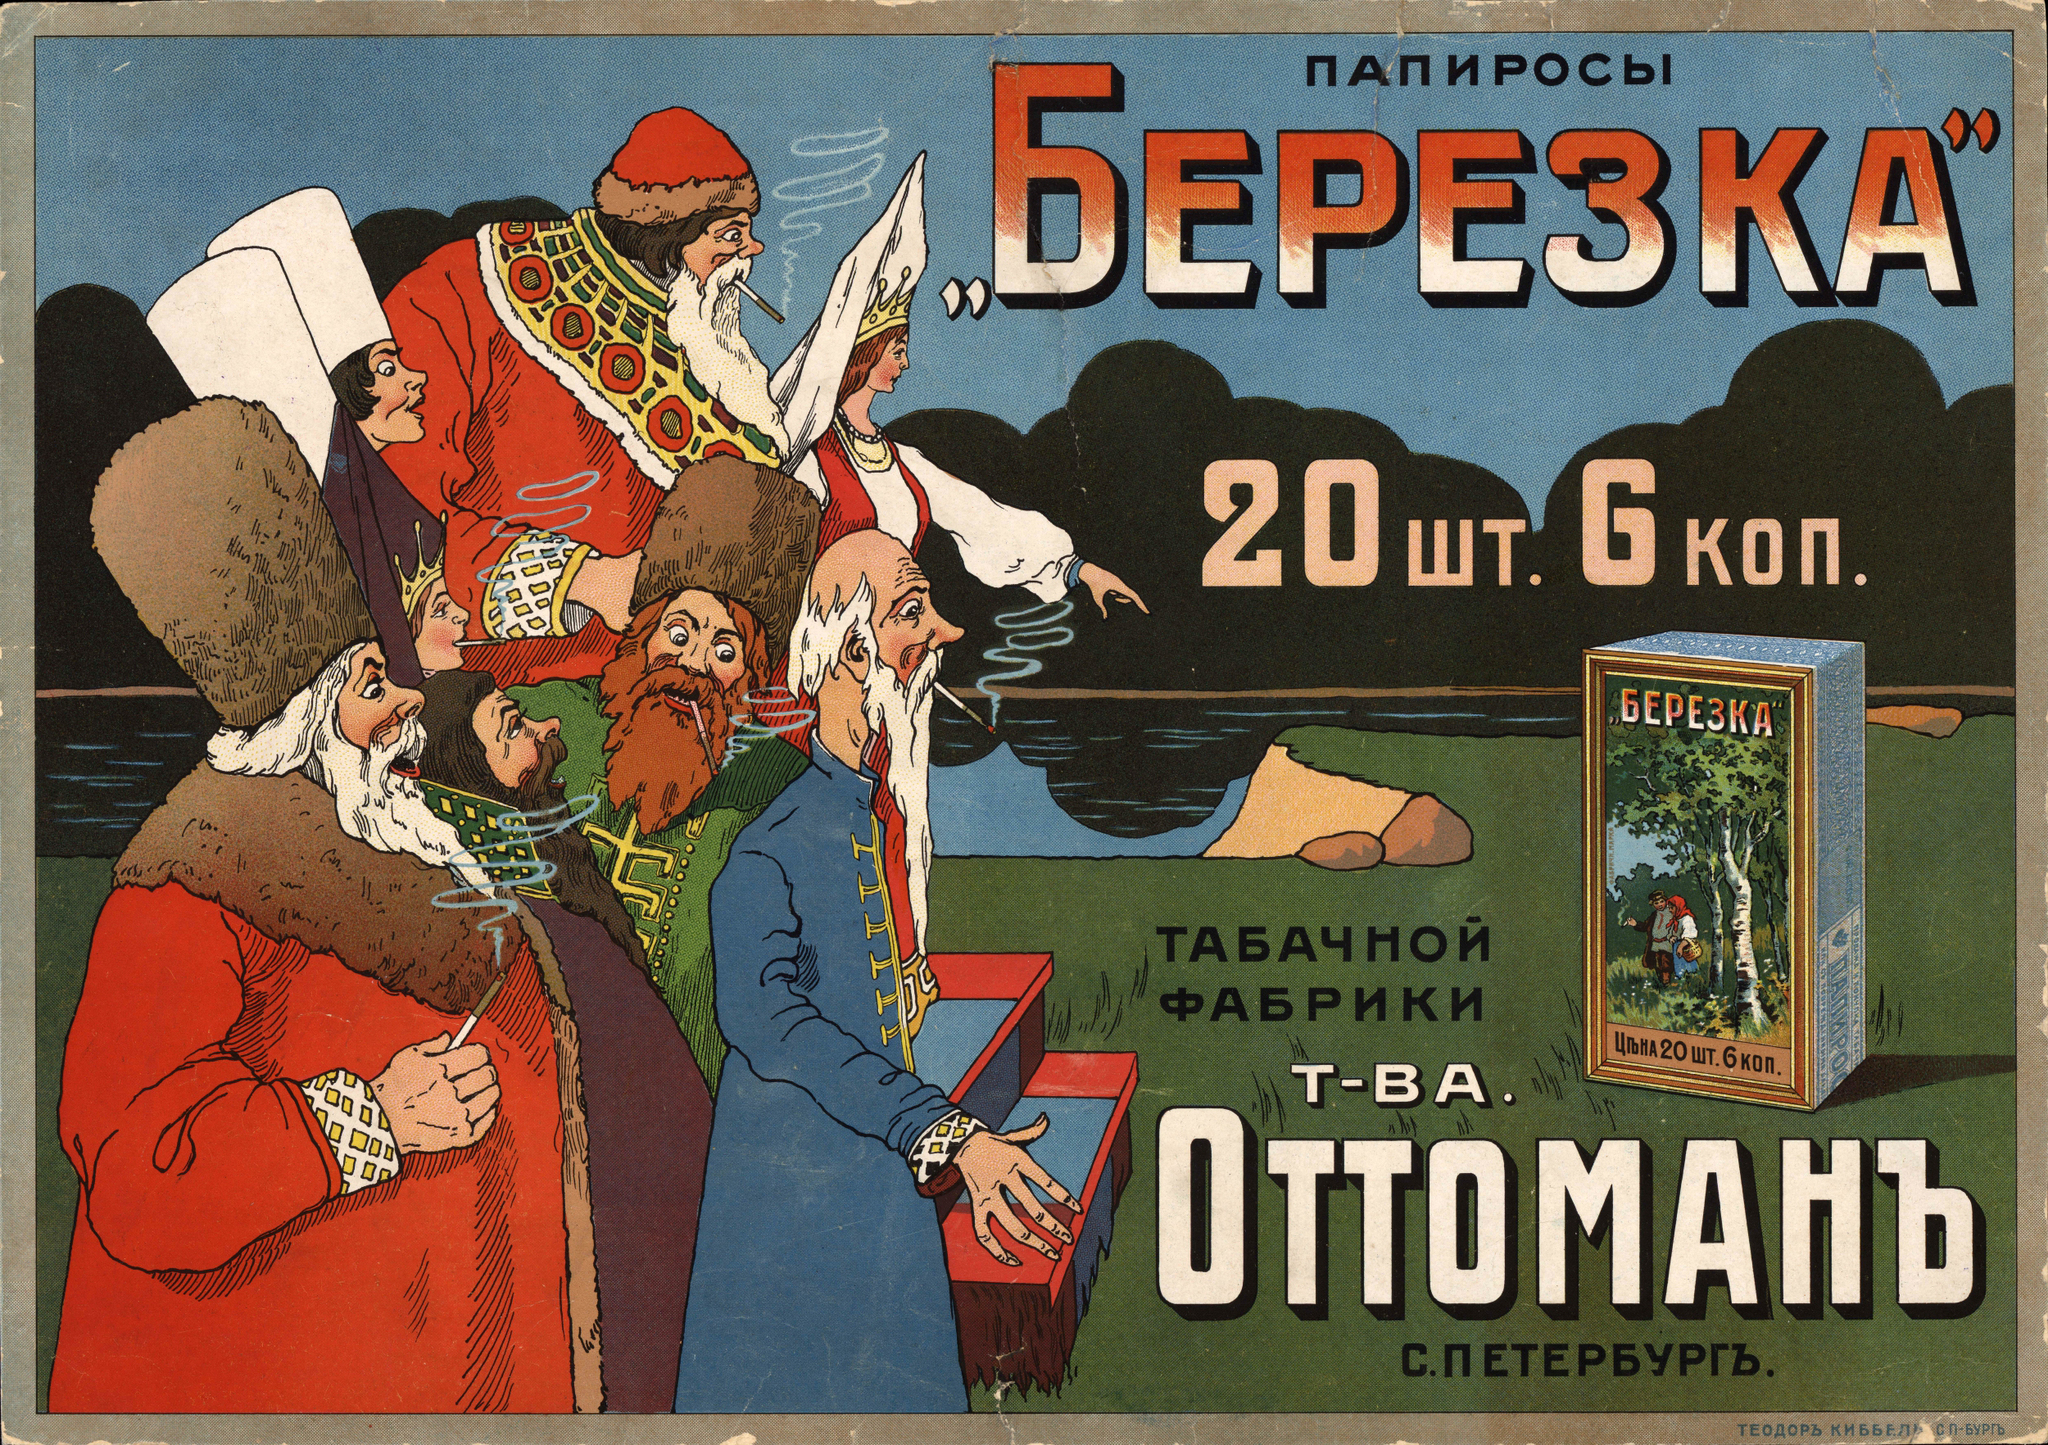 Дореволюционная реклама. Фабрика оттоман папиросы. Плакаты реклама папирос Российской империи. Дореволюционные рекламные плакаты.